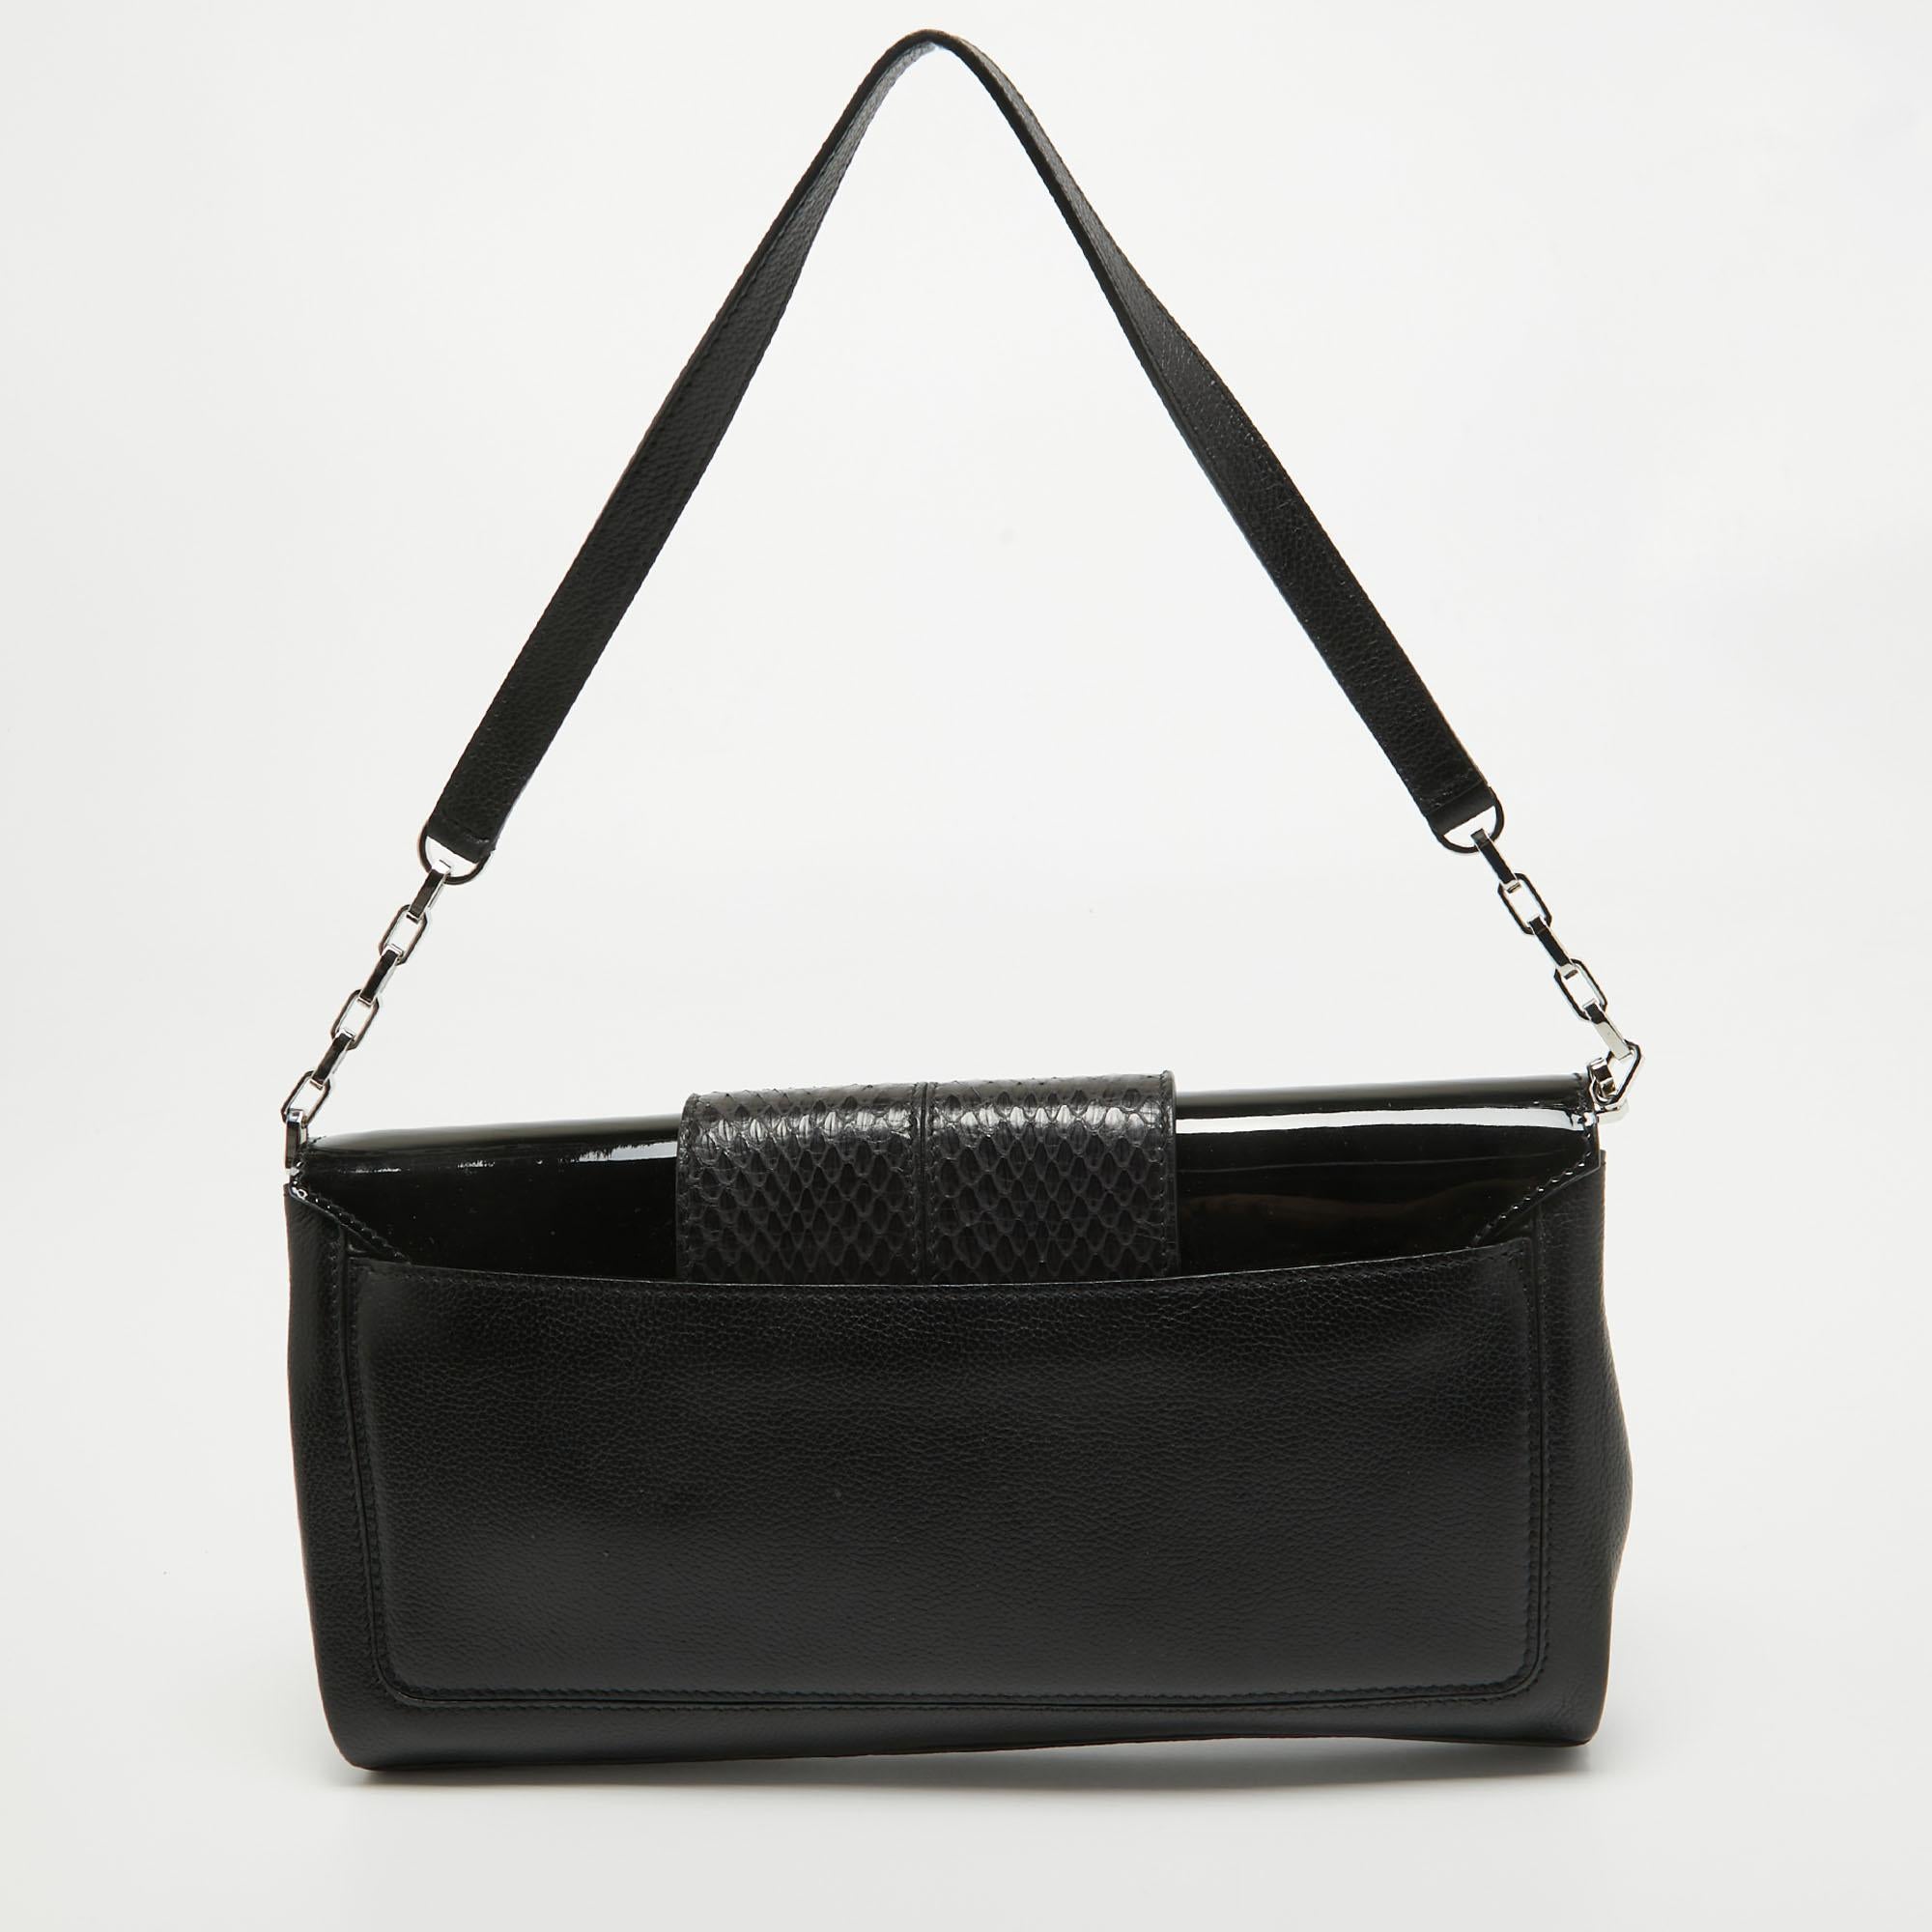 Cartier Black Leather and Snakeskin Classic Feminine Line Shoulder Bag 1